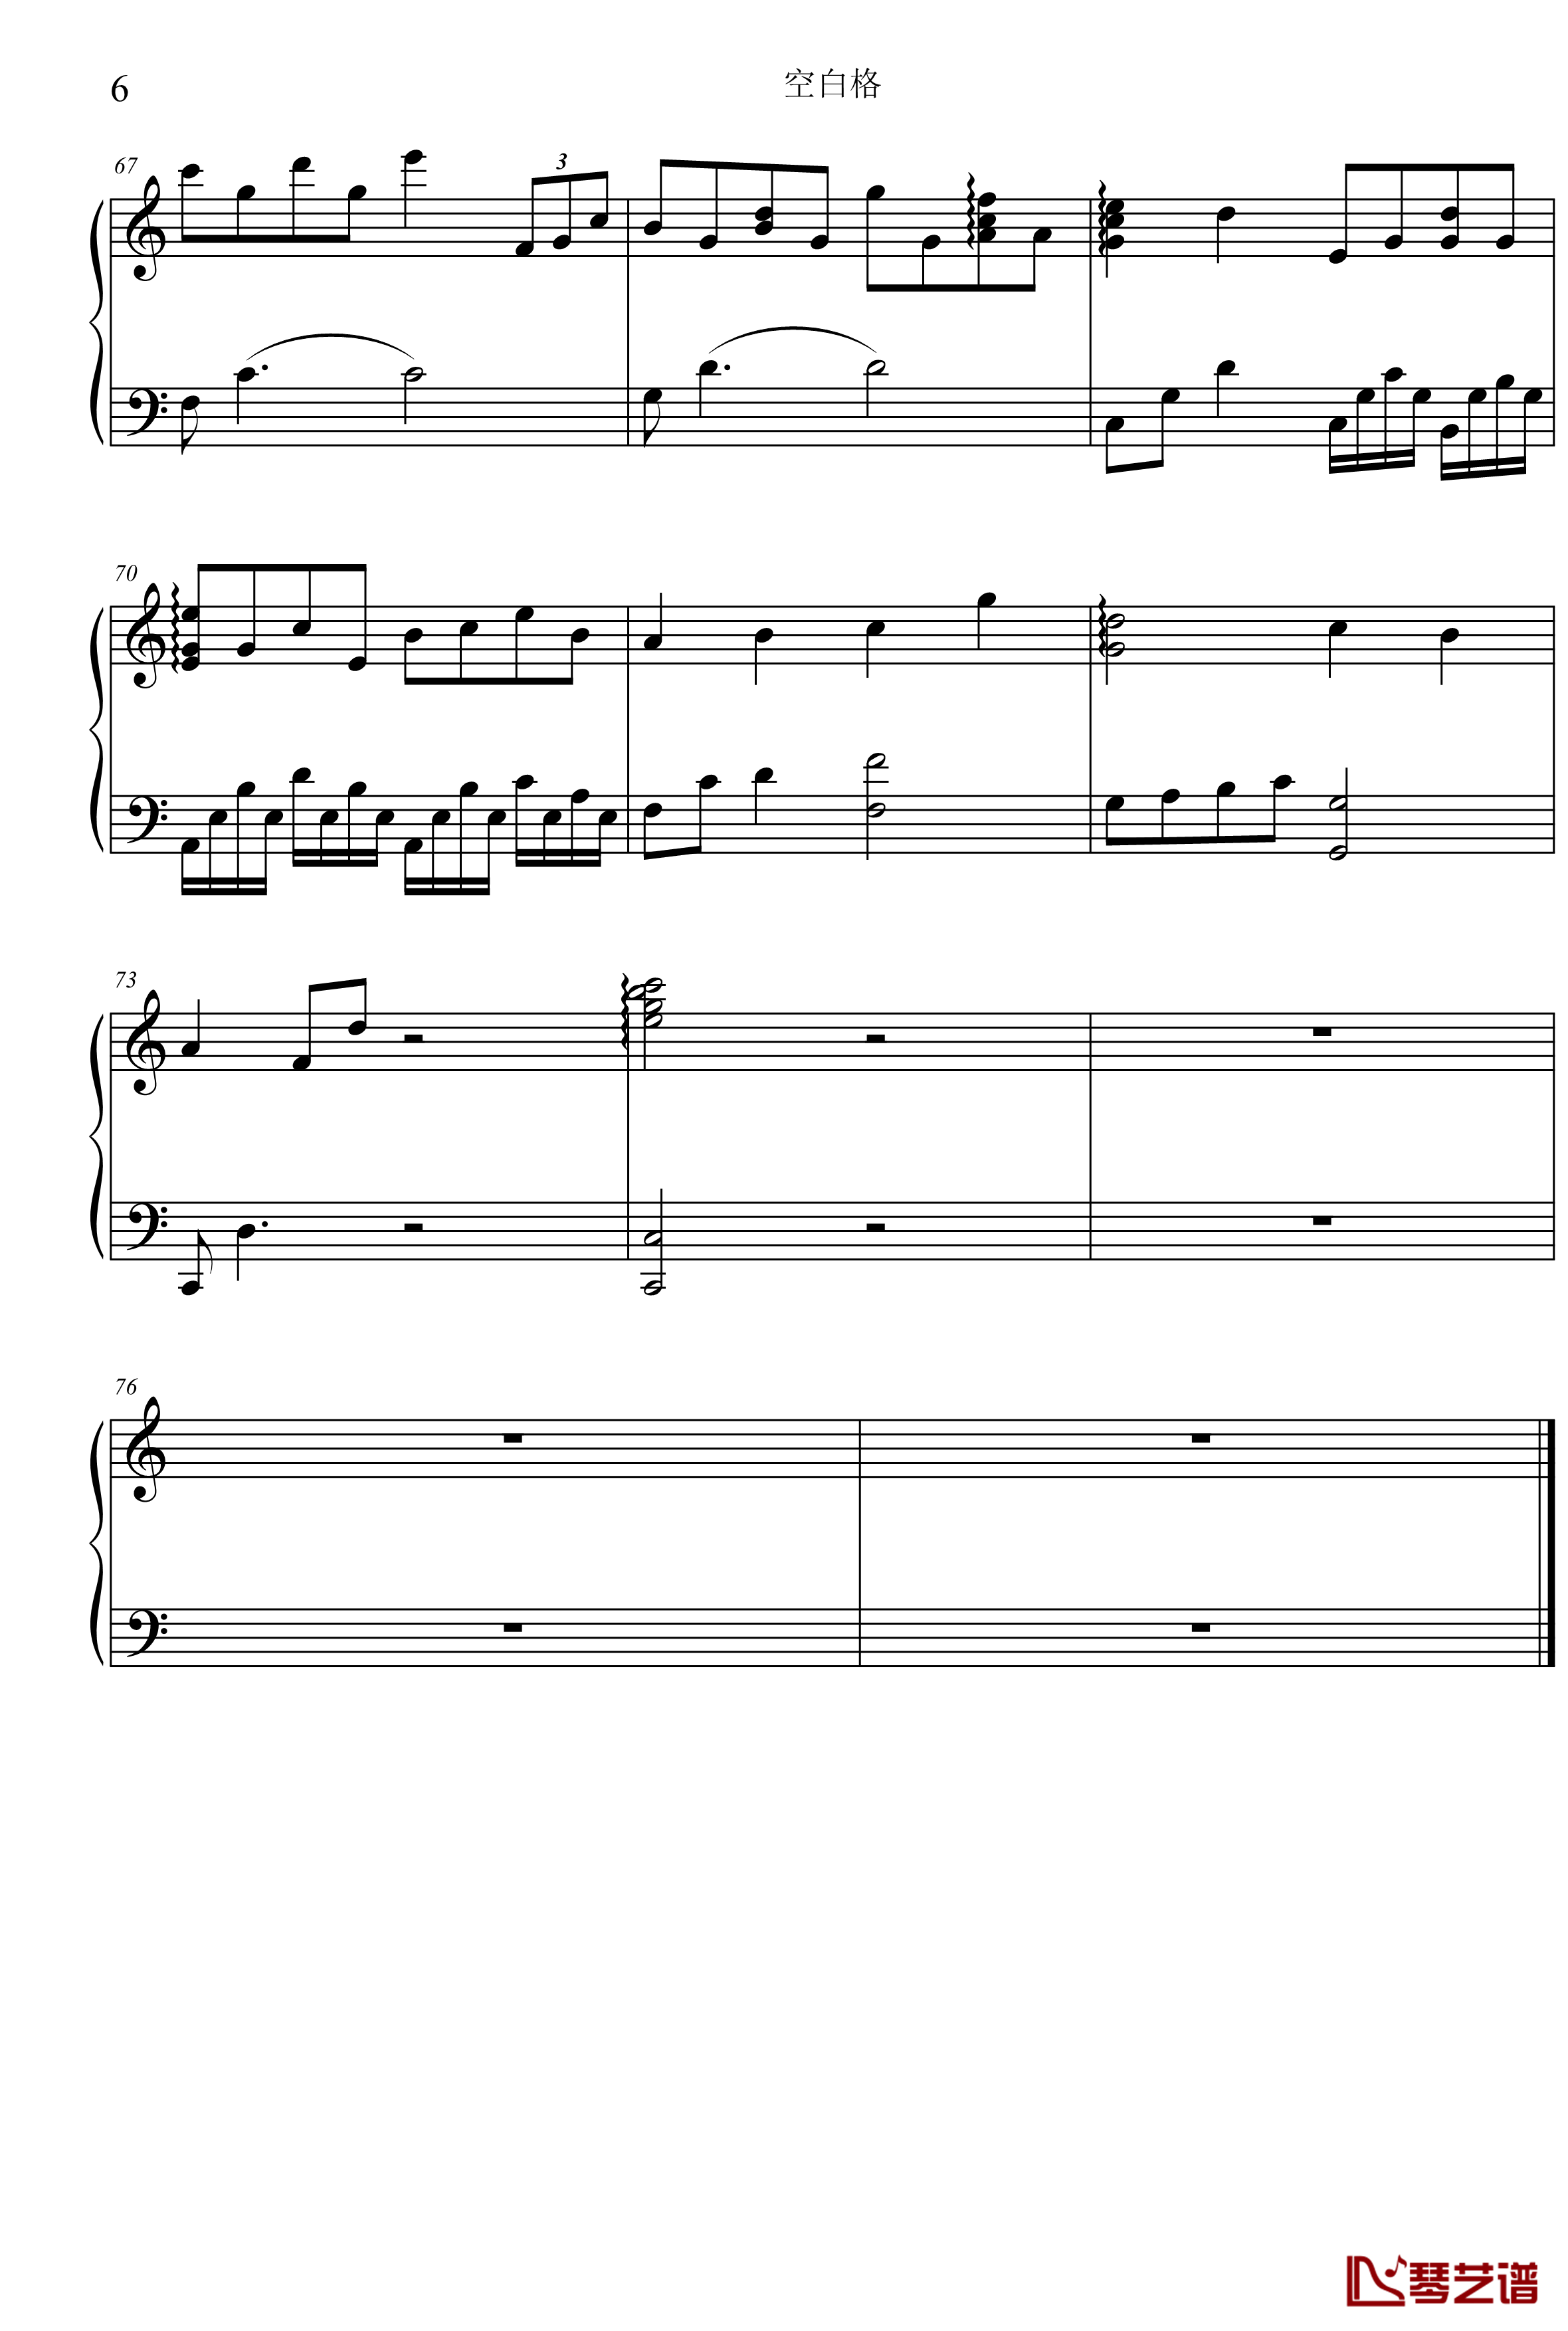 空白格钢琴谱-C调版本-蔡健雅6